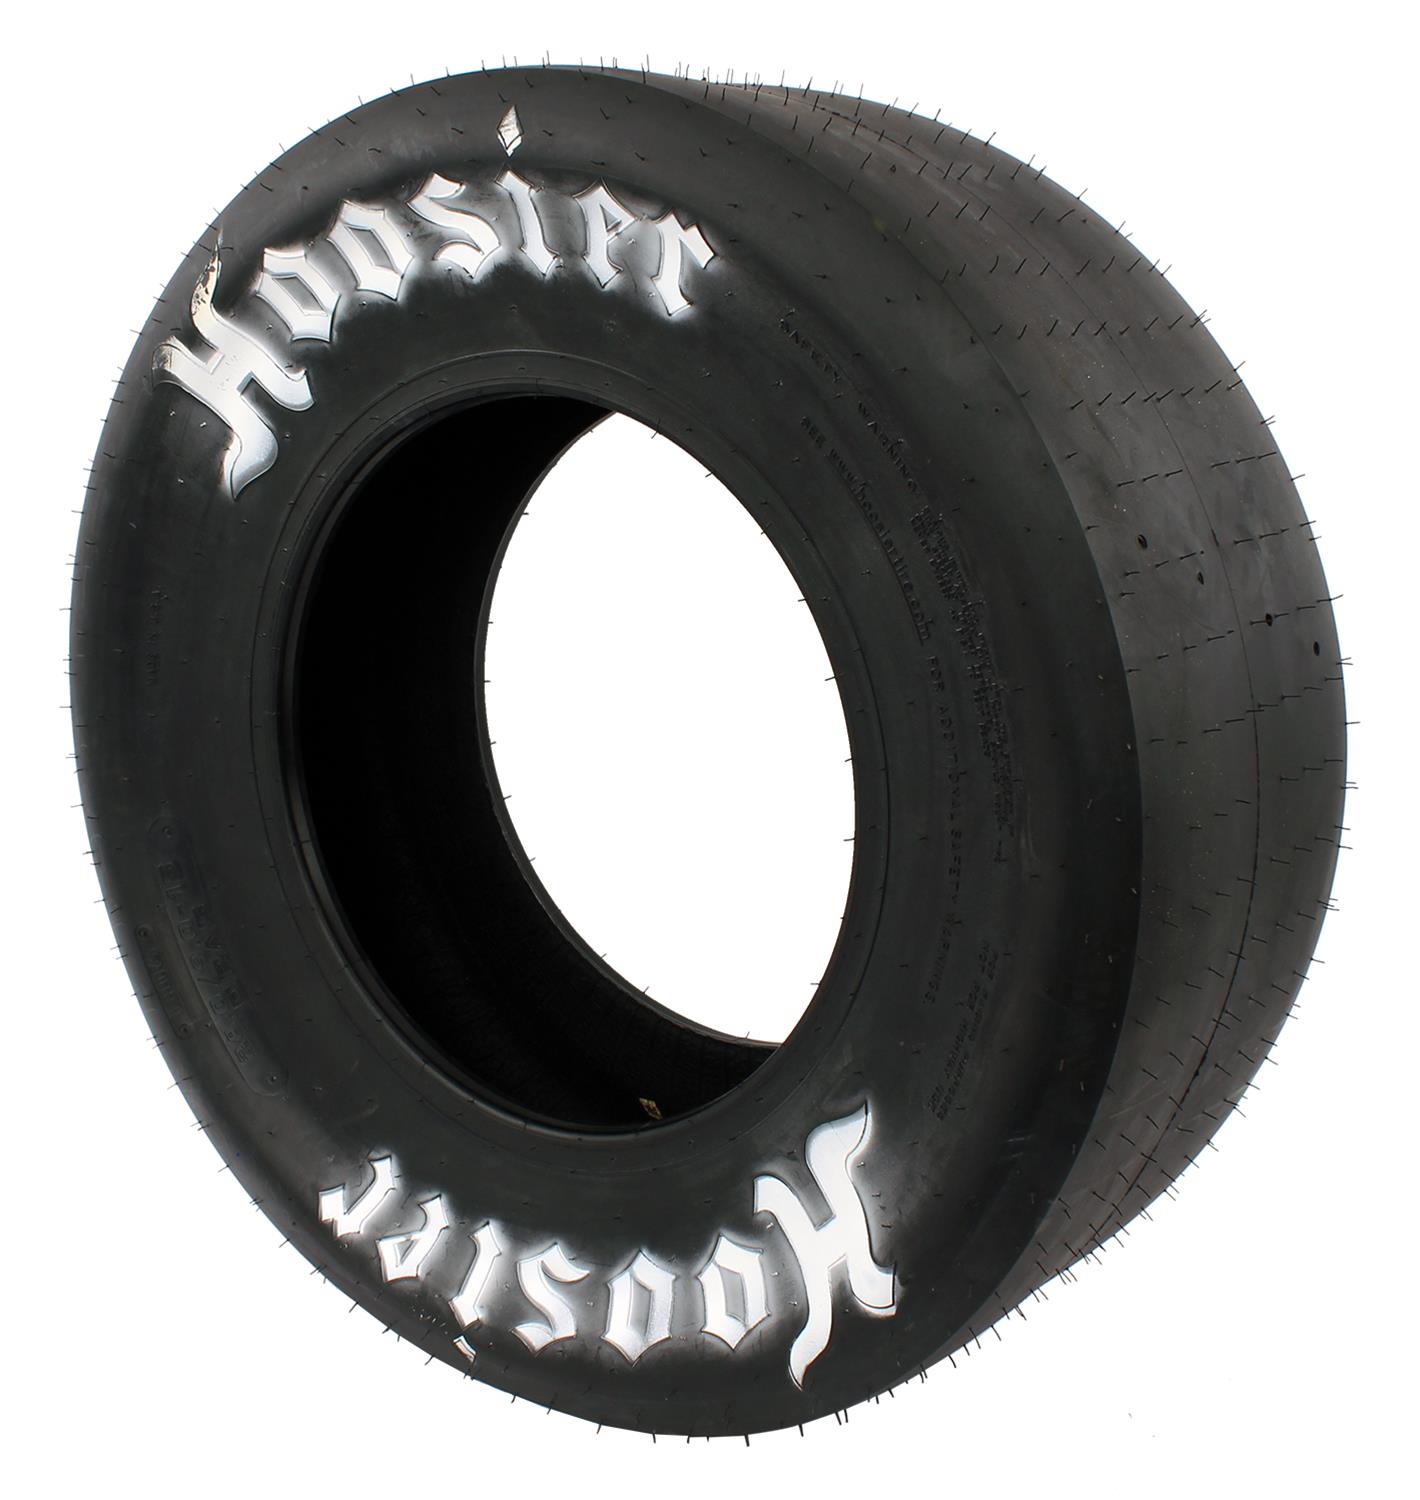 Hoosier Racing Tire 18140d06 Hoosier Drag Racing Slicks Summit Racing